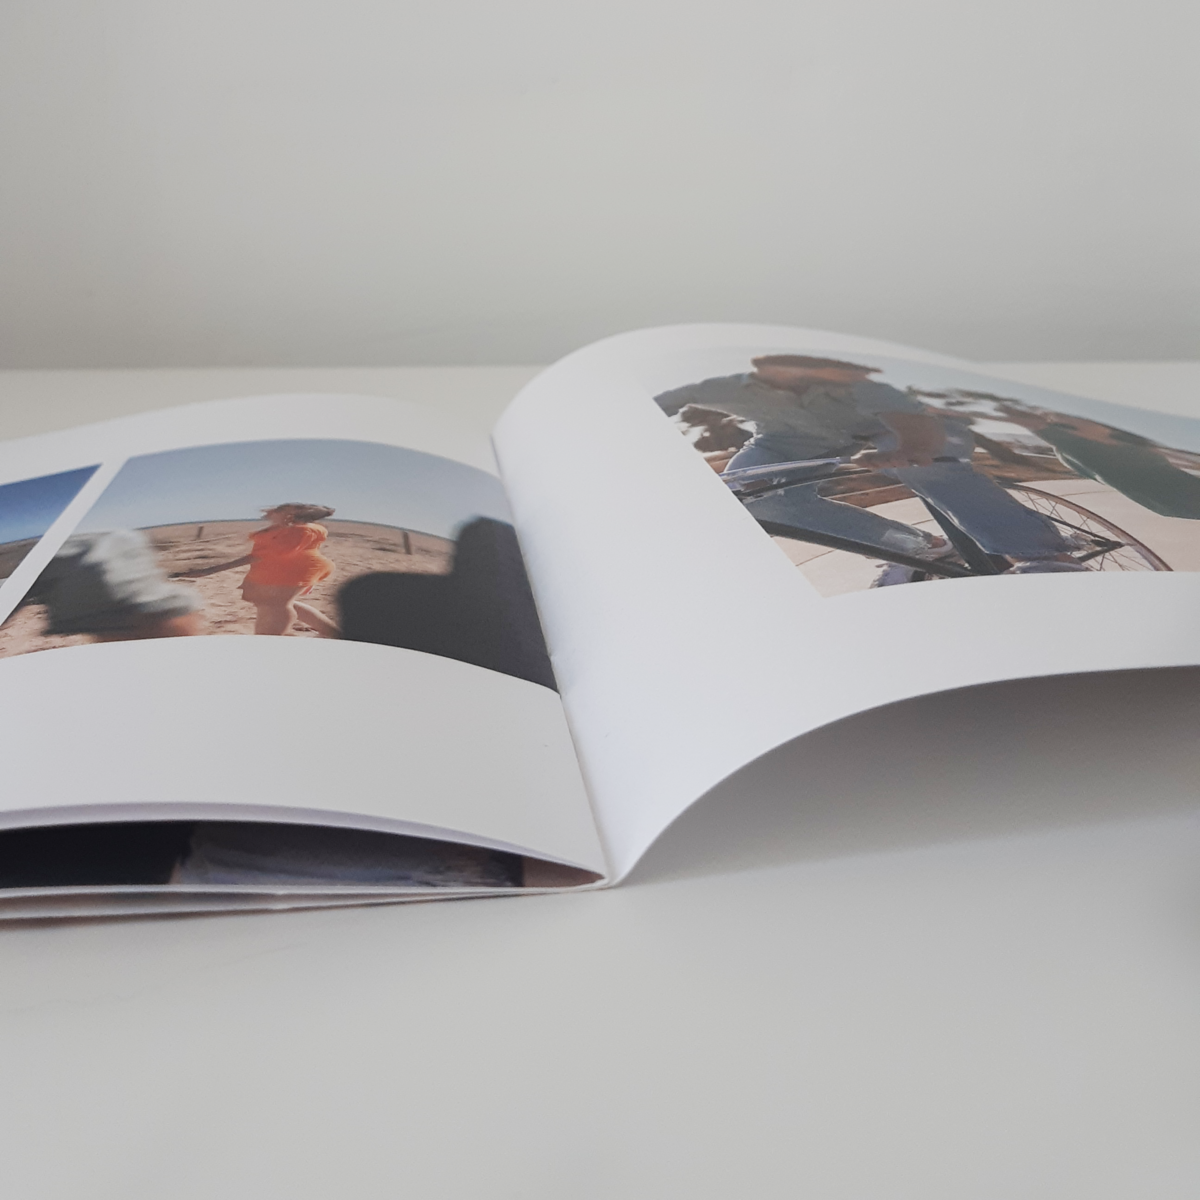 Les livres photos sont imprimés au format carré - Happiedays